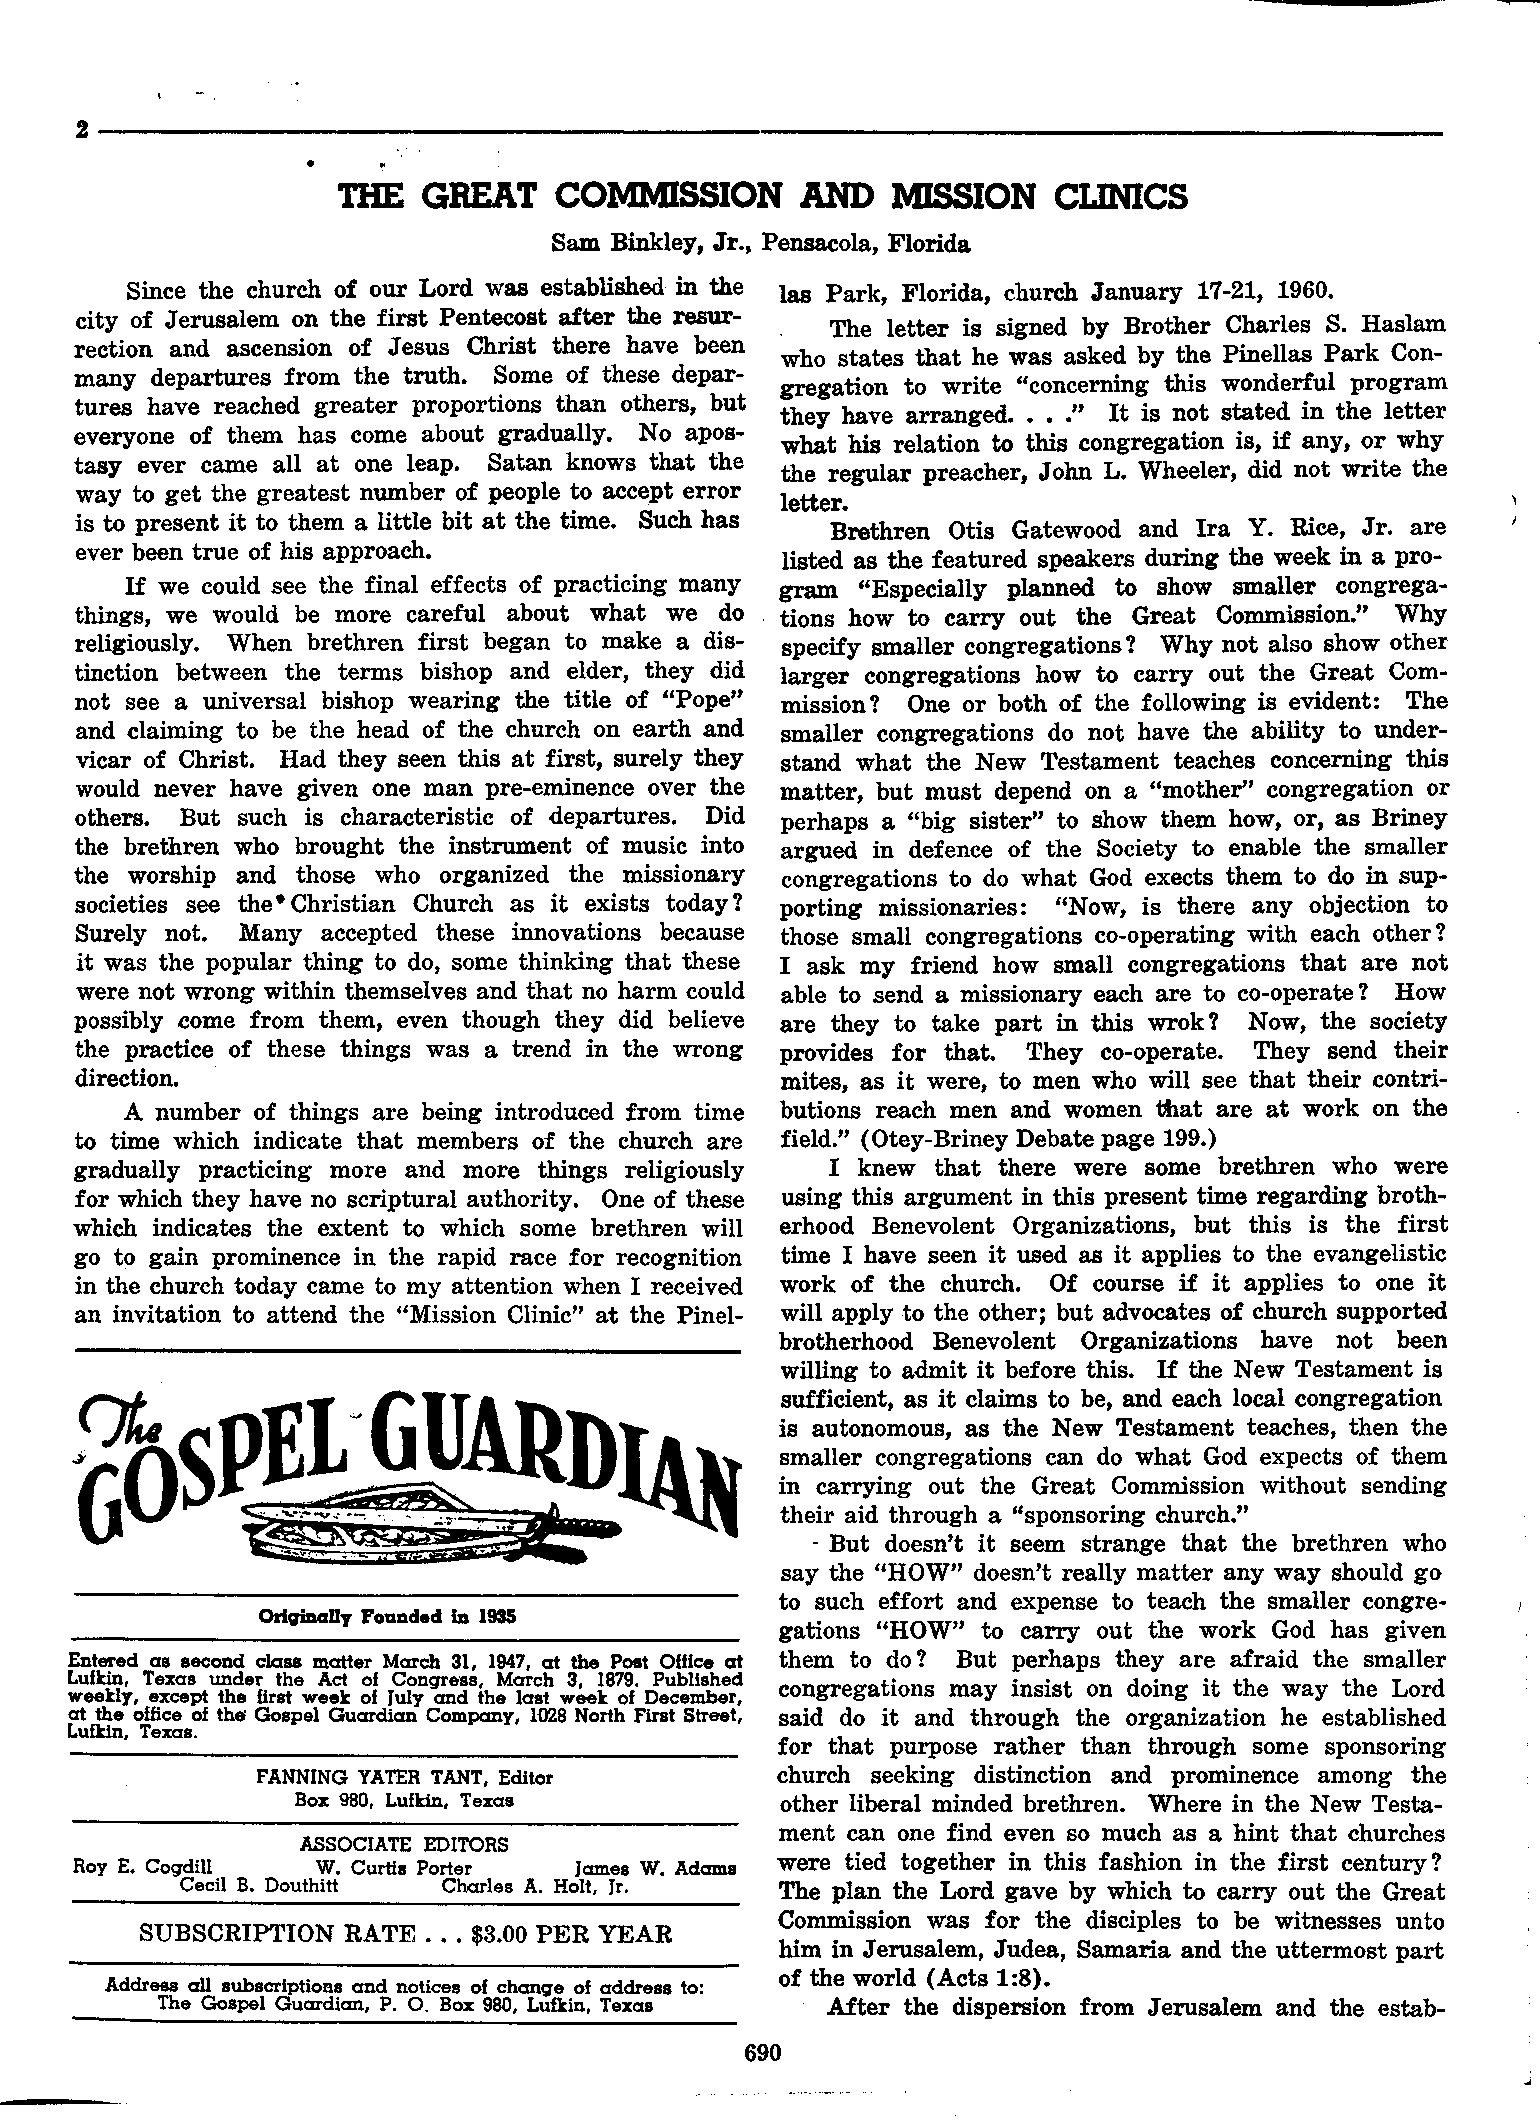 Gospel Guardian Original: Vol.11 No.44 Pg.2